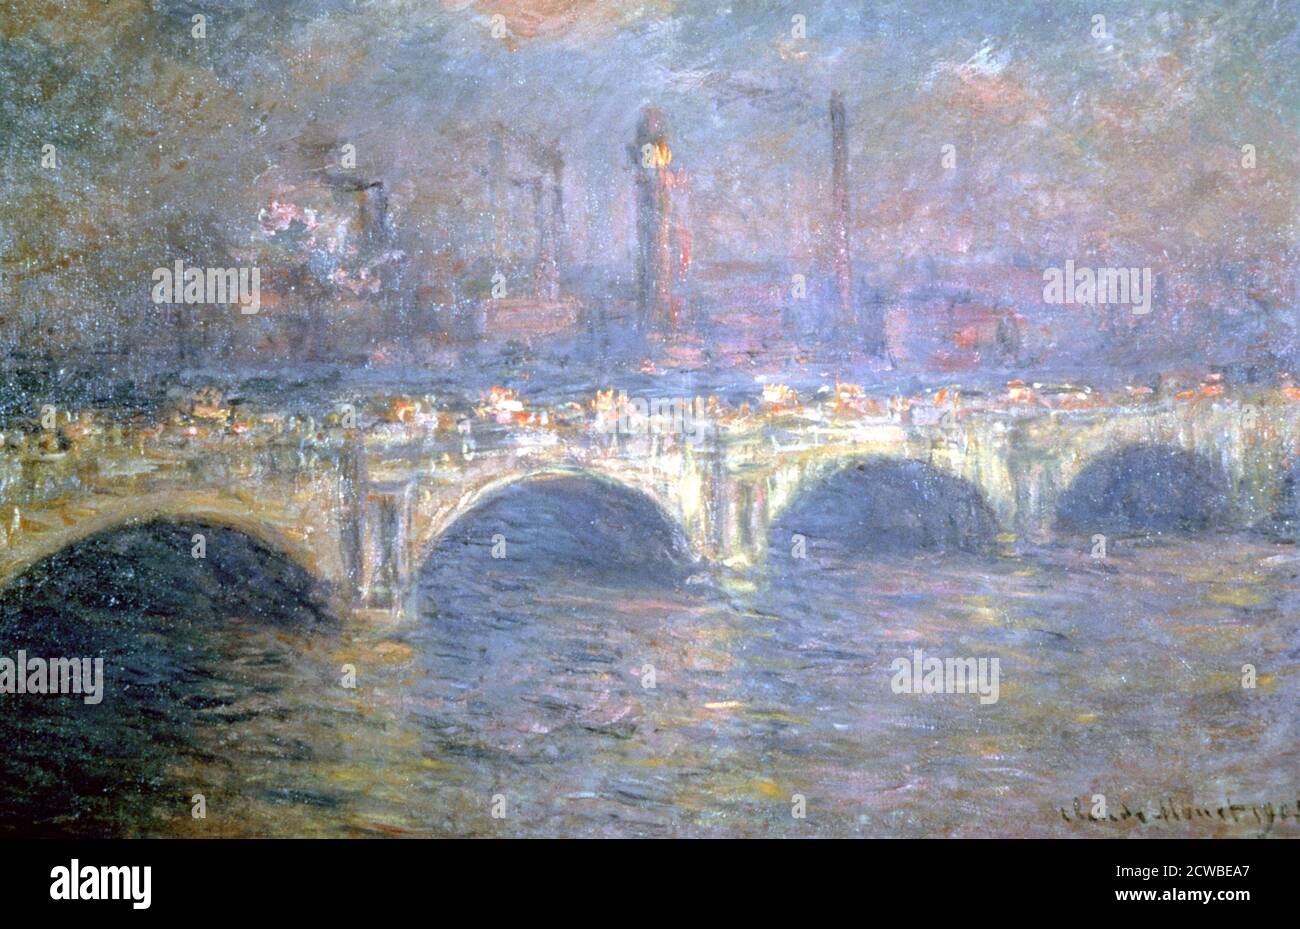 The Waterloo Bridge, Londres, 1903. Artiste: Claude Monet. Monet était un peintre français, un fondateur de la peinture impressionniste française et le praticien le plus cohérent et le plus prolifique de la philosophie des mouvements. Banque D'Images